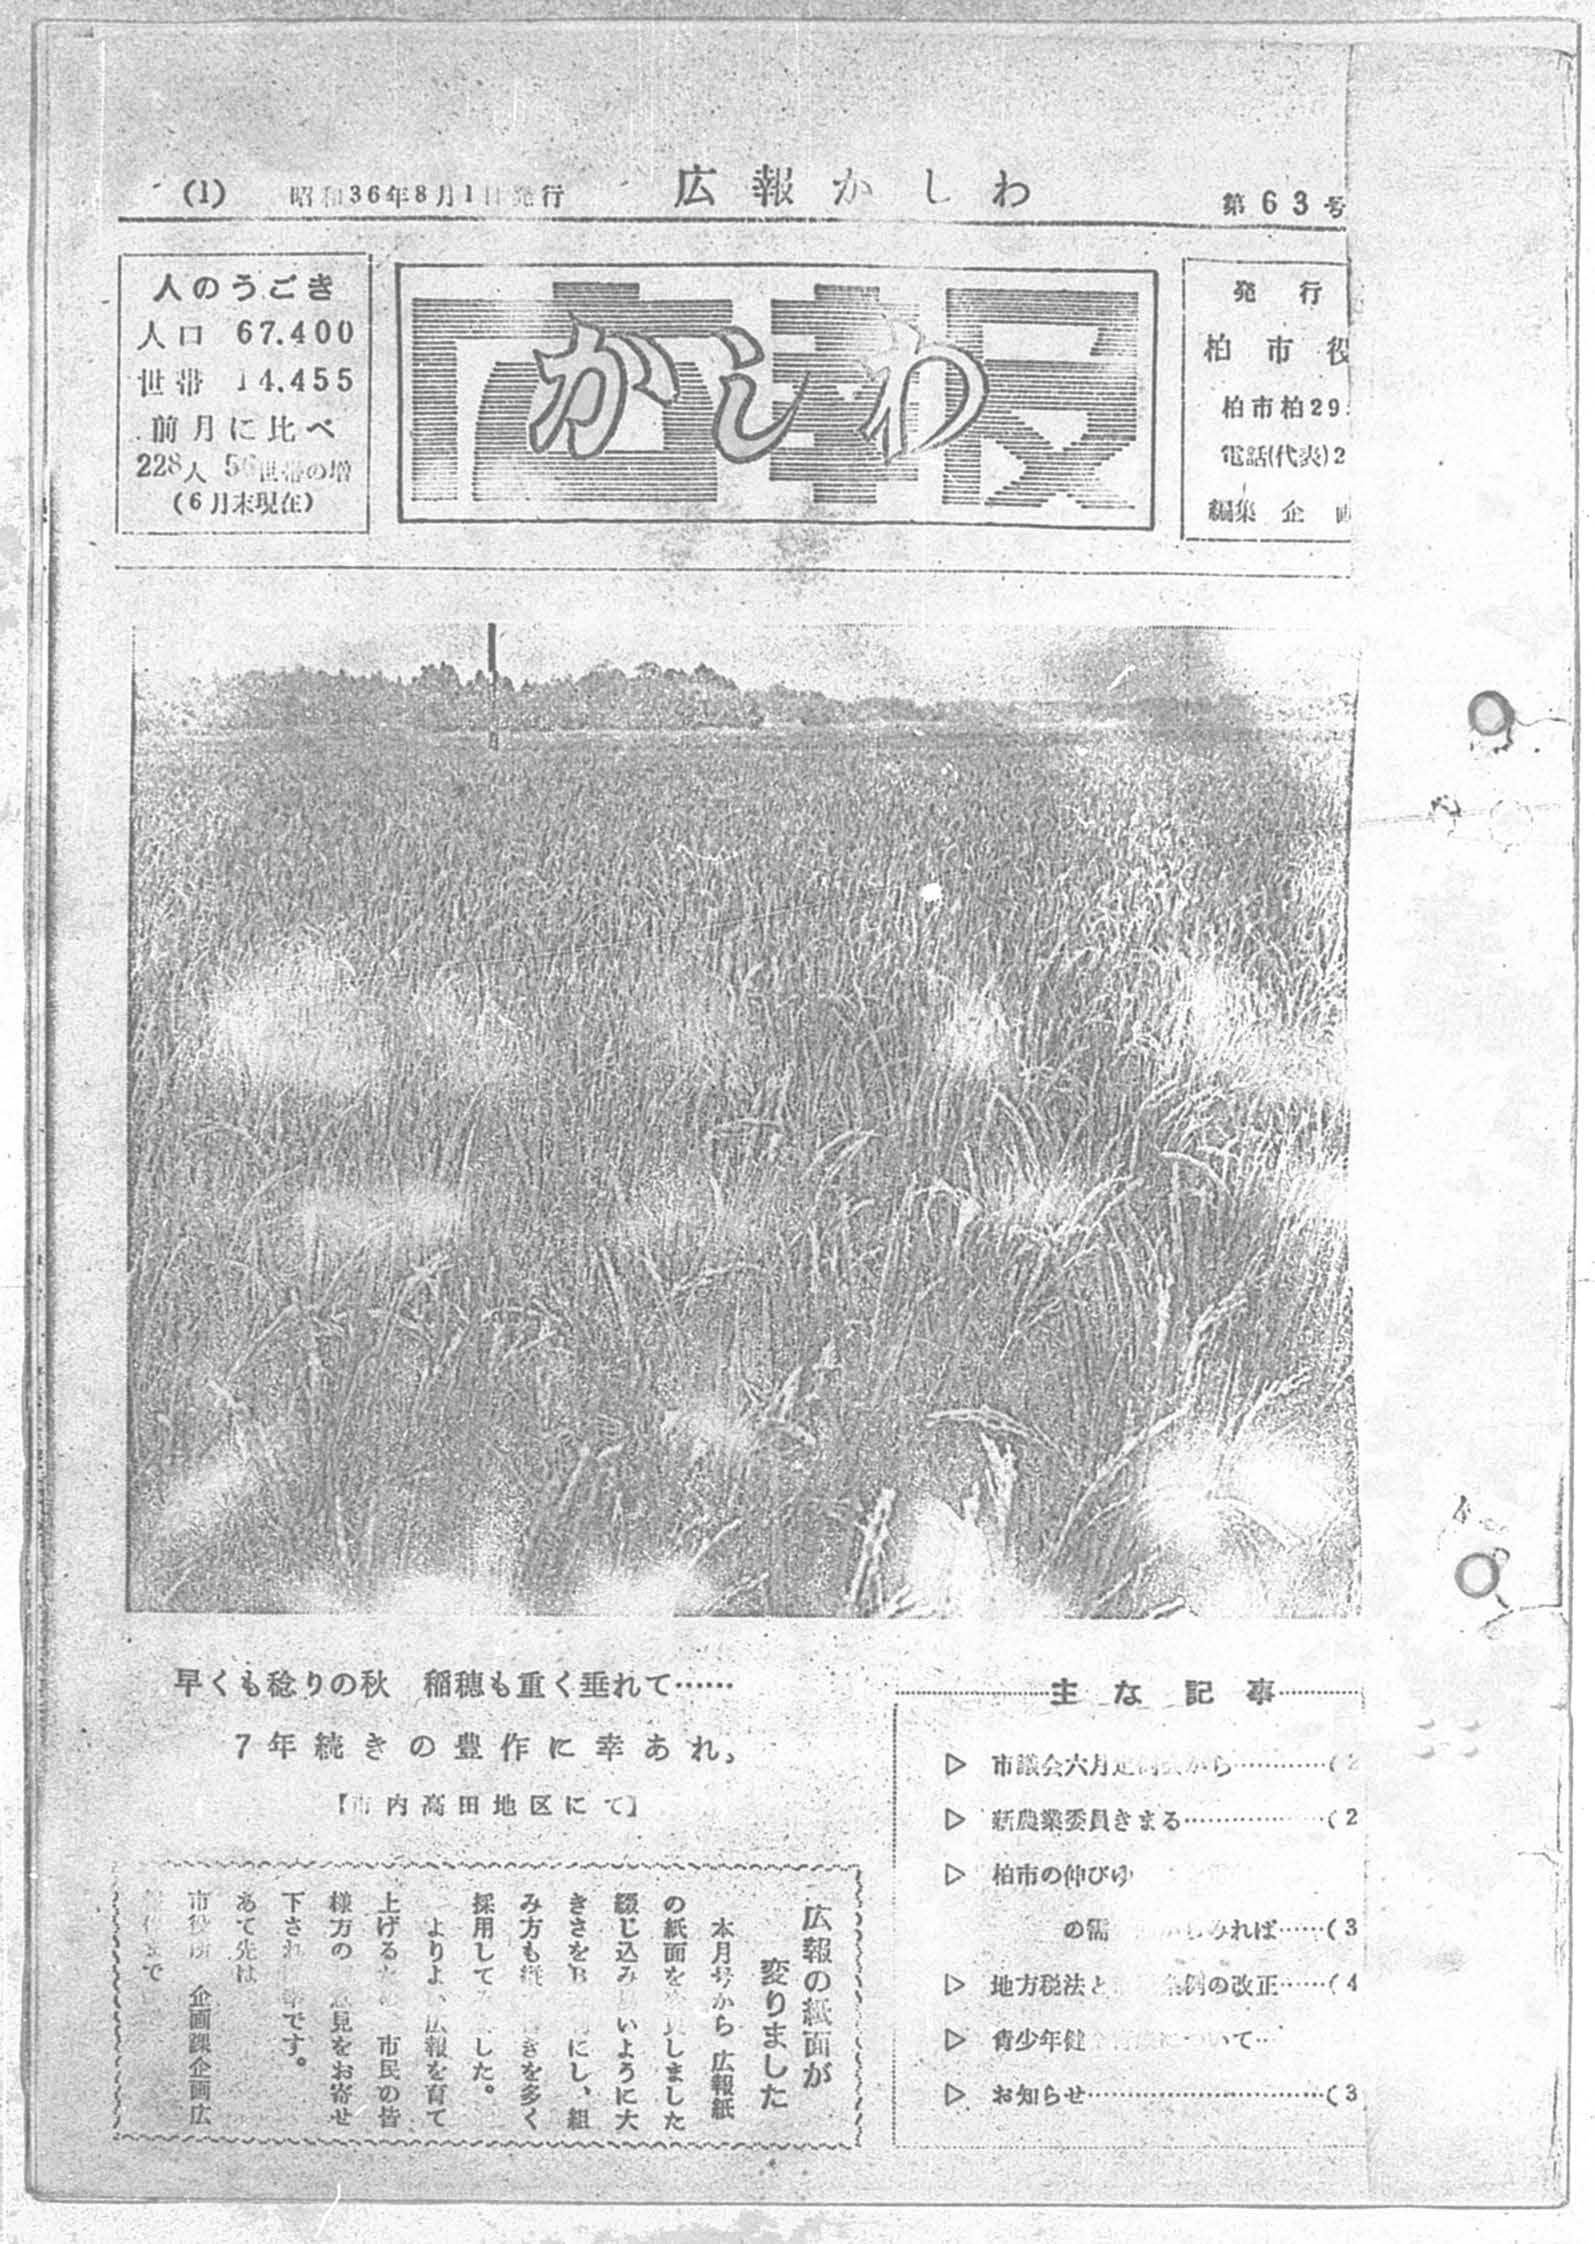 広報かしわ　昭和36年8月1日発行　63号